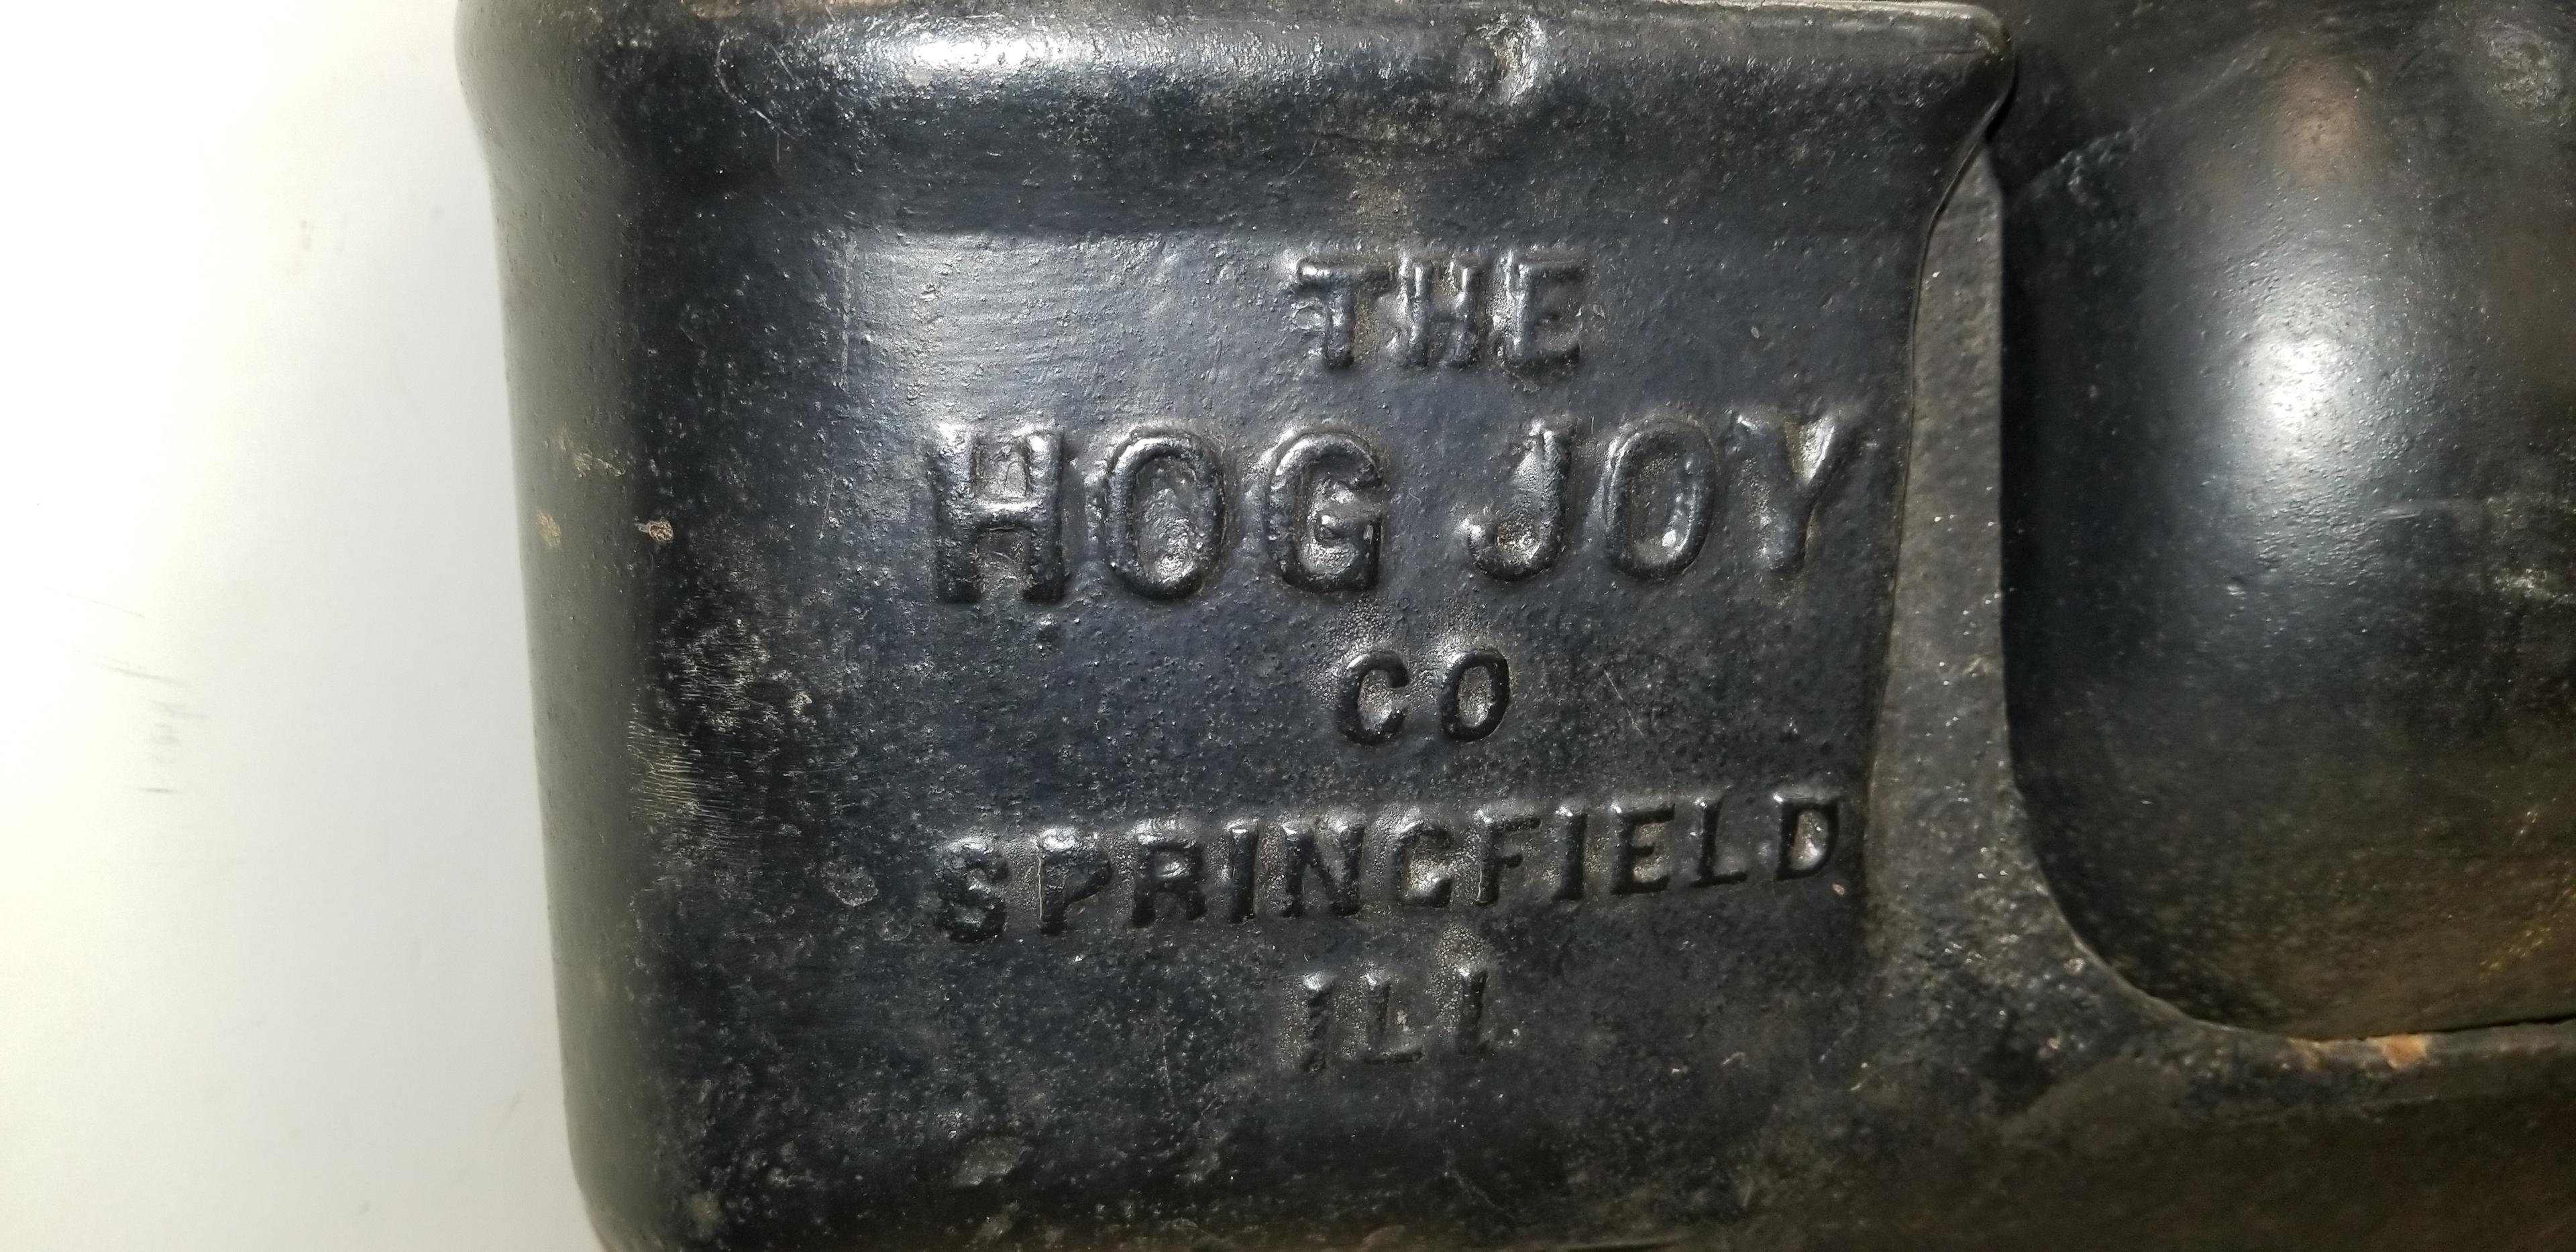 "THE HOG JOY" HOG OILER - PATENT APPLIED FOR